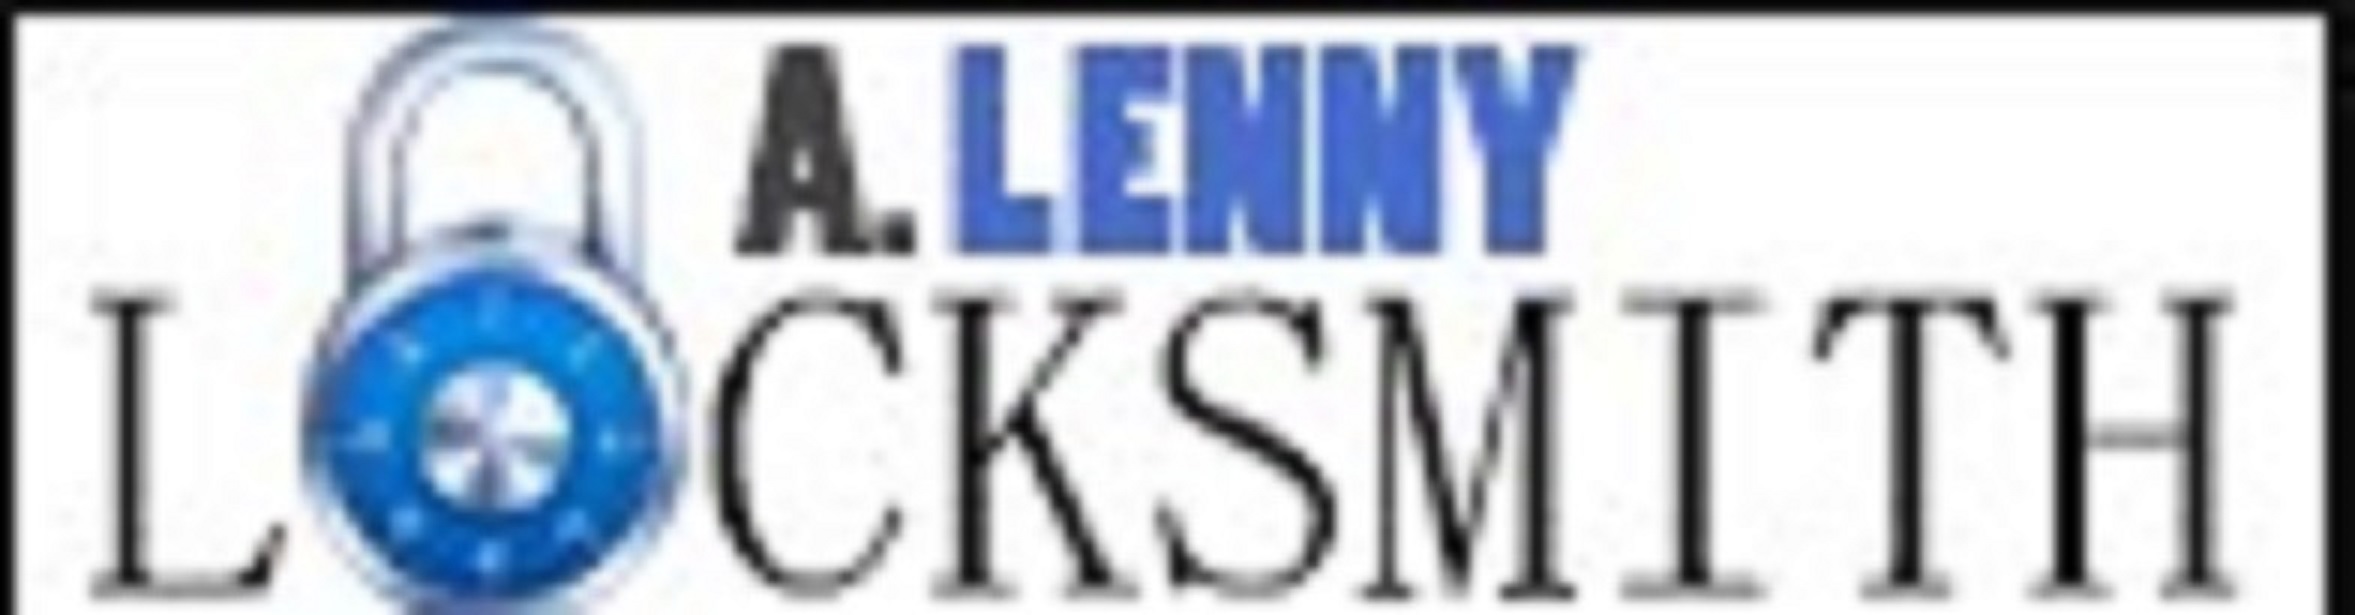 A Lenny Locksmith Hollywood Fl